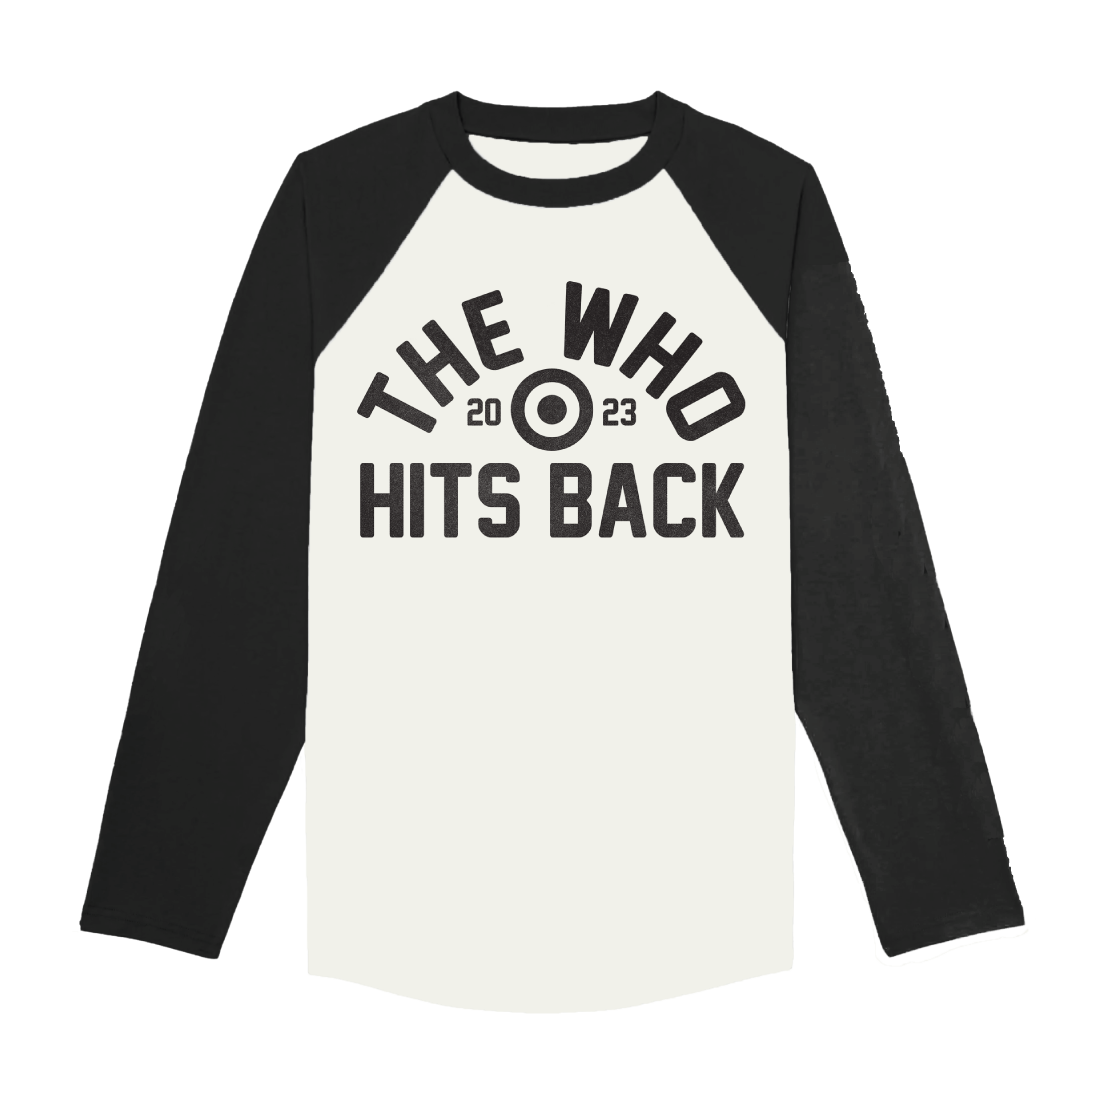 The Who - HITS BACK RAGLAN